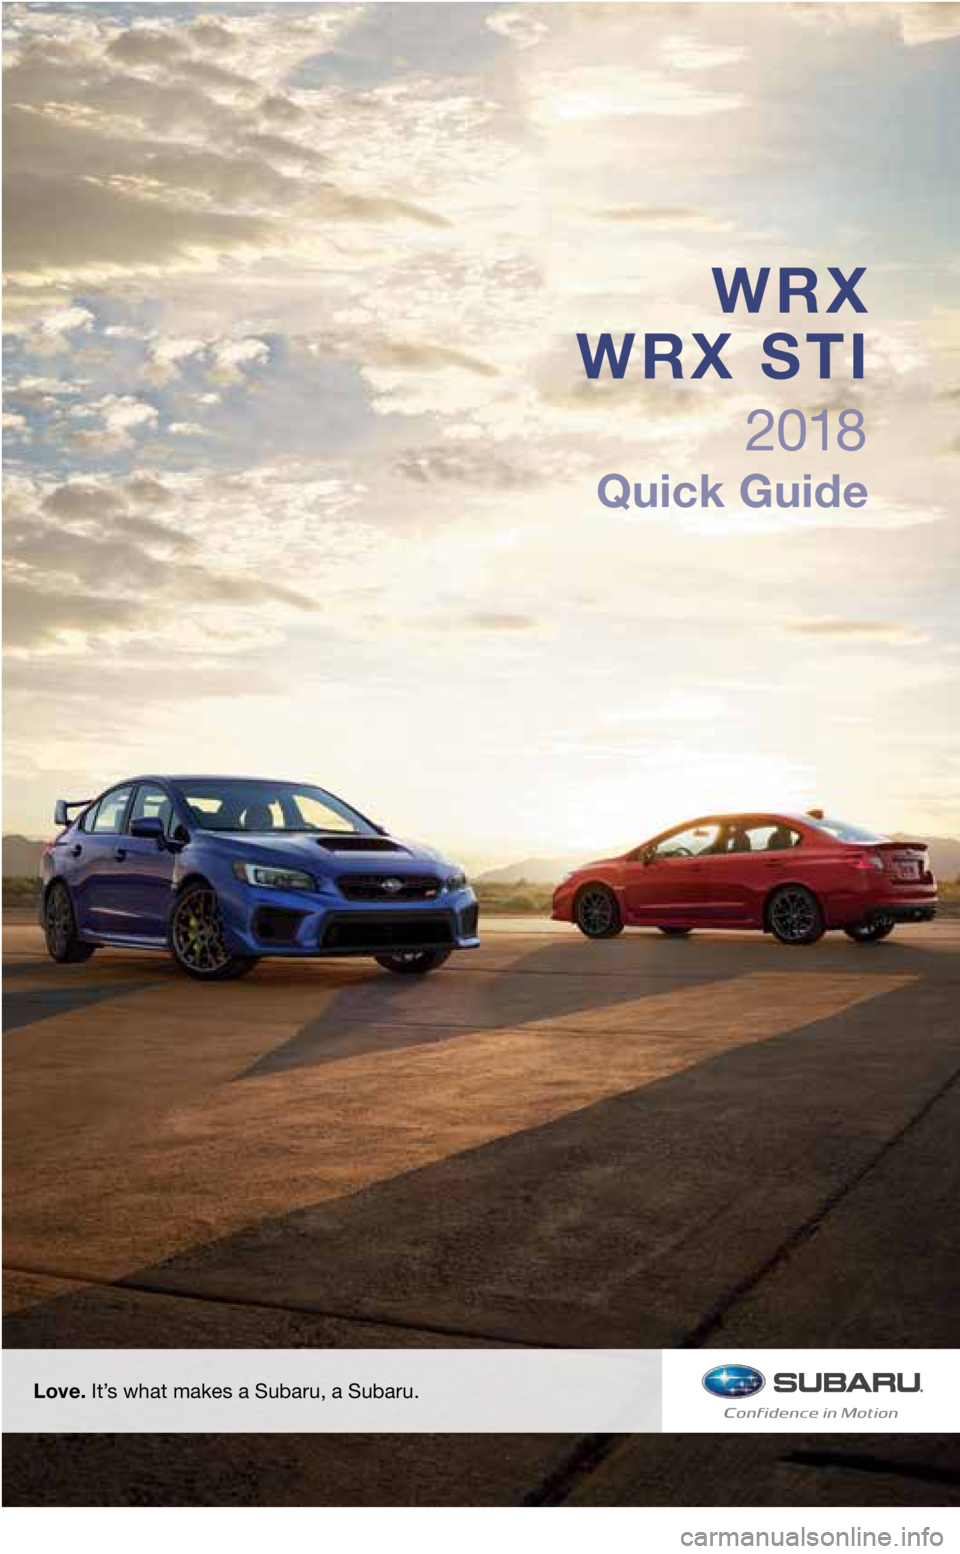 SUBARU WRX 2018  Quick Guide Love. It’s what makes a Subaru, a Subaru.
2018
Quick Guide
WRX 
WRX STI
3033672_18b_WRX_WRX_STI_QG_051617.indd   25/16/17   2:29 PM  